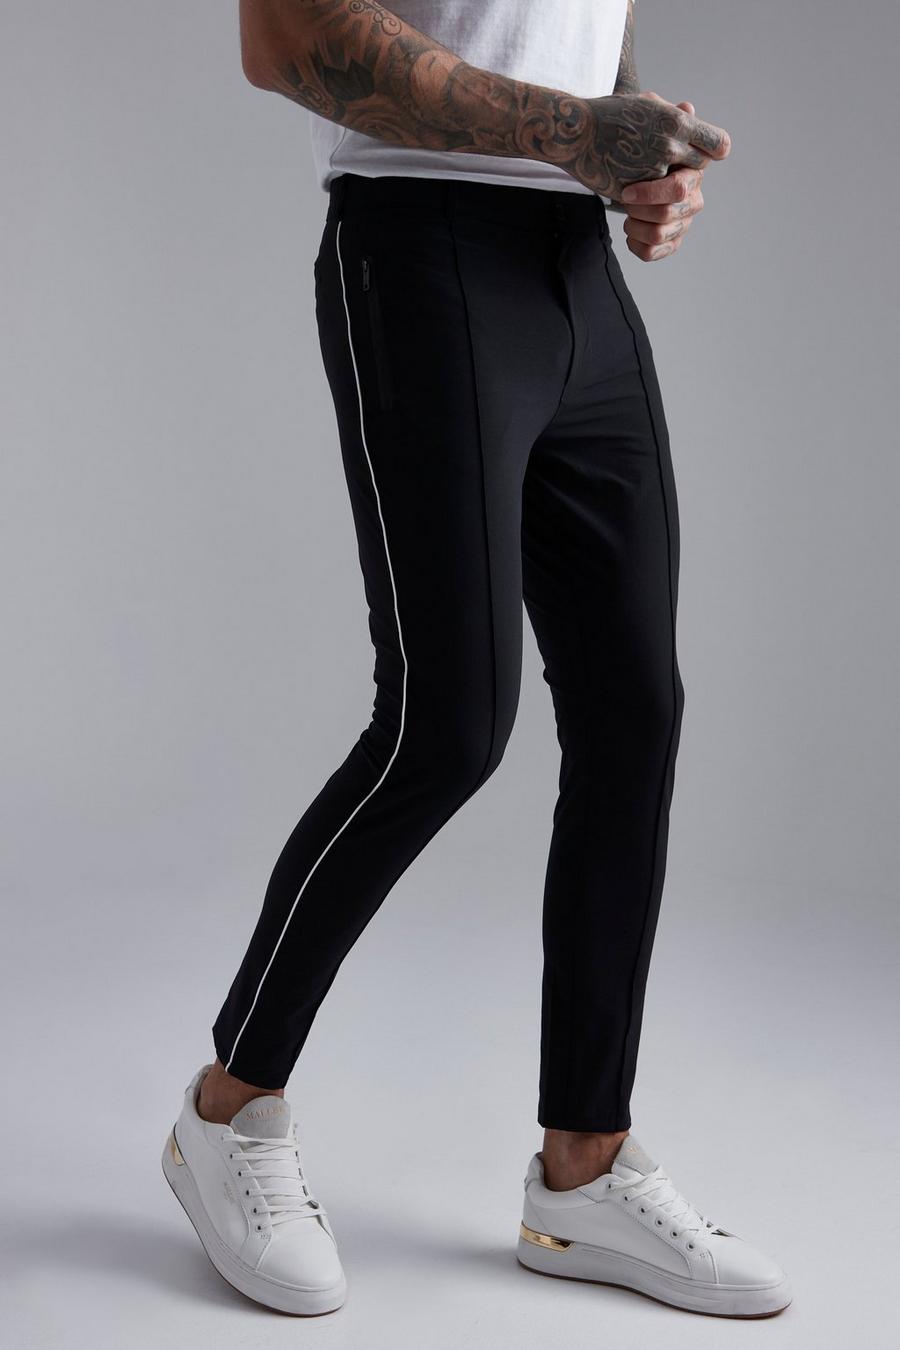 Pantaloni Slim Fit in Stretch tecnico con cordoncino, Black negro